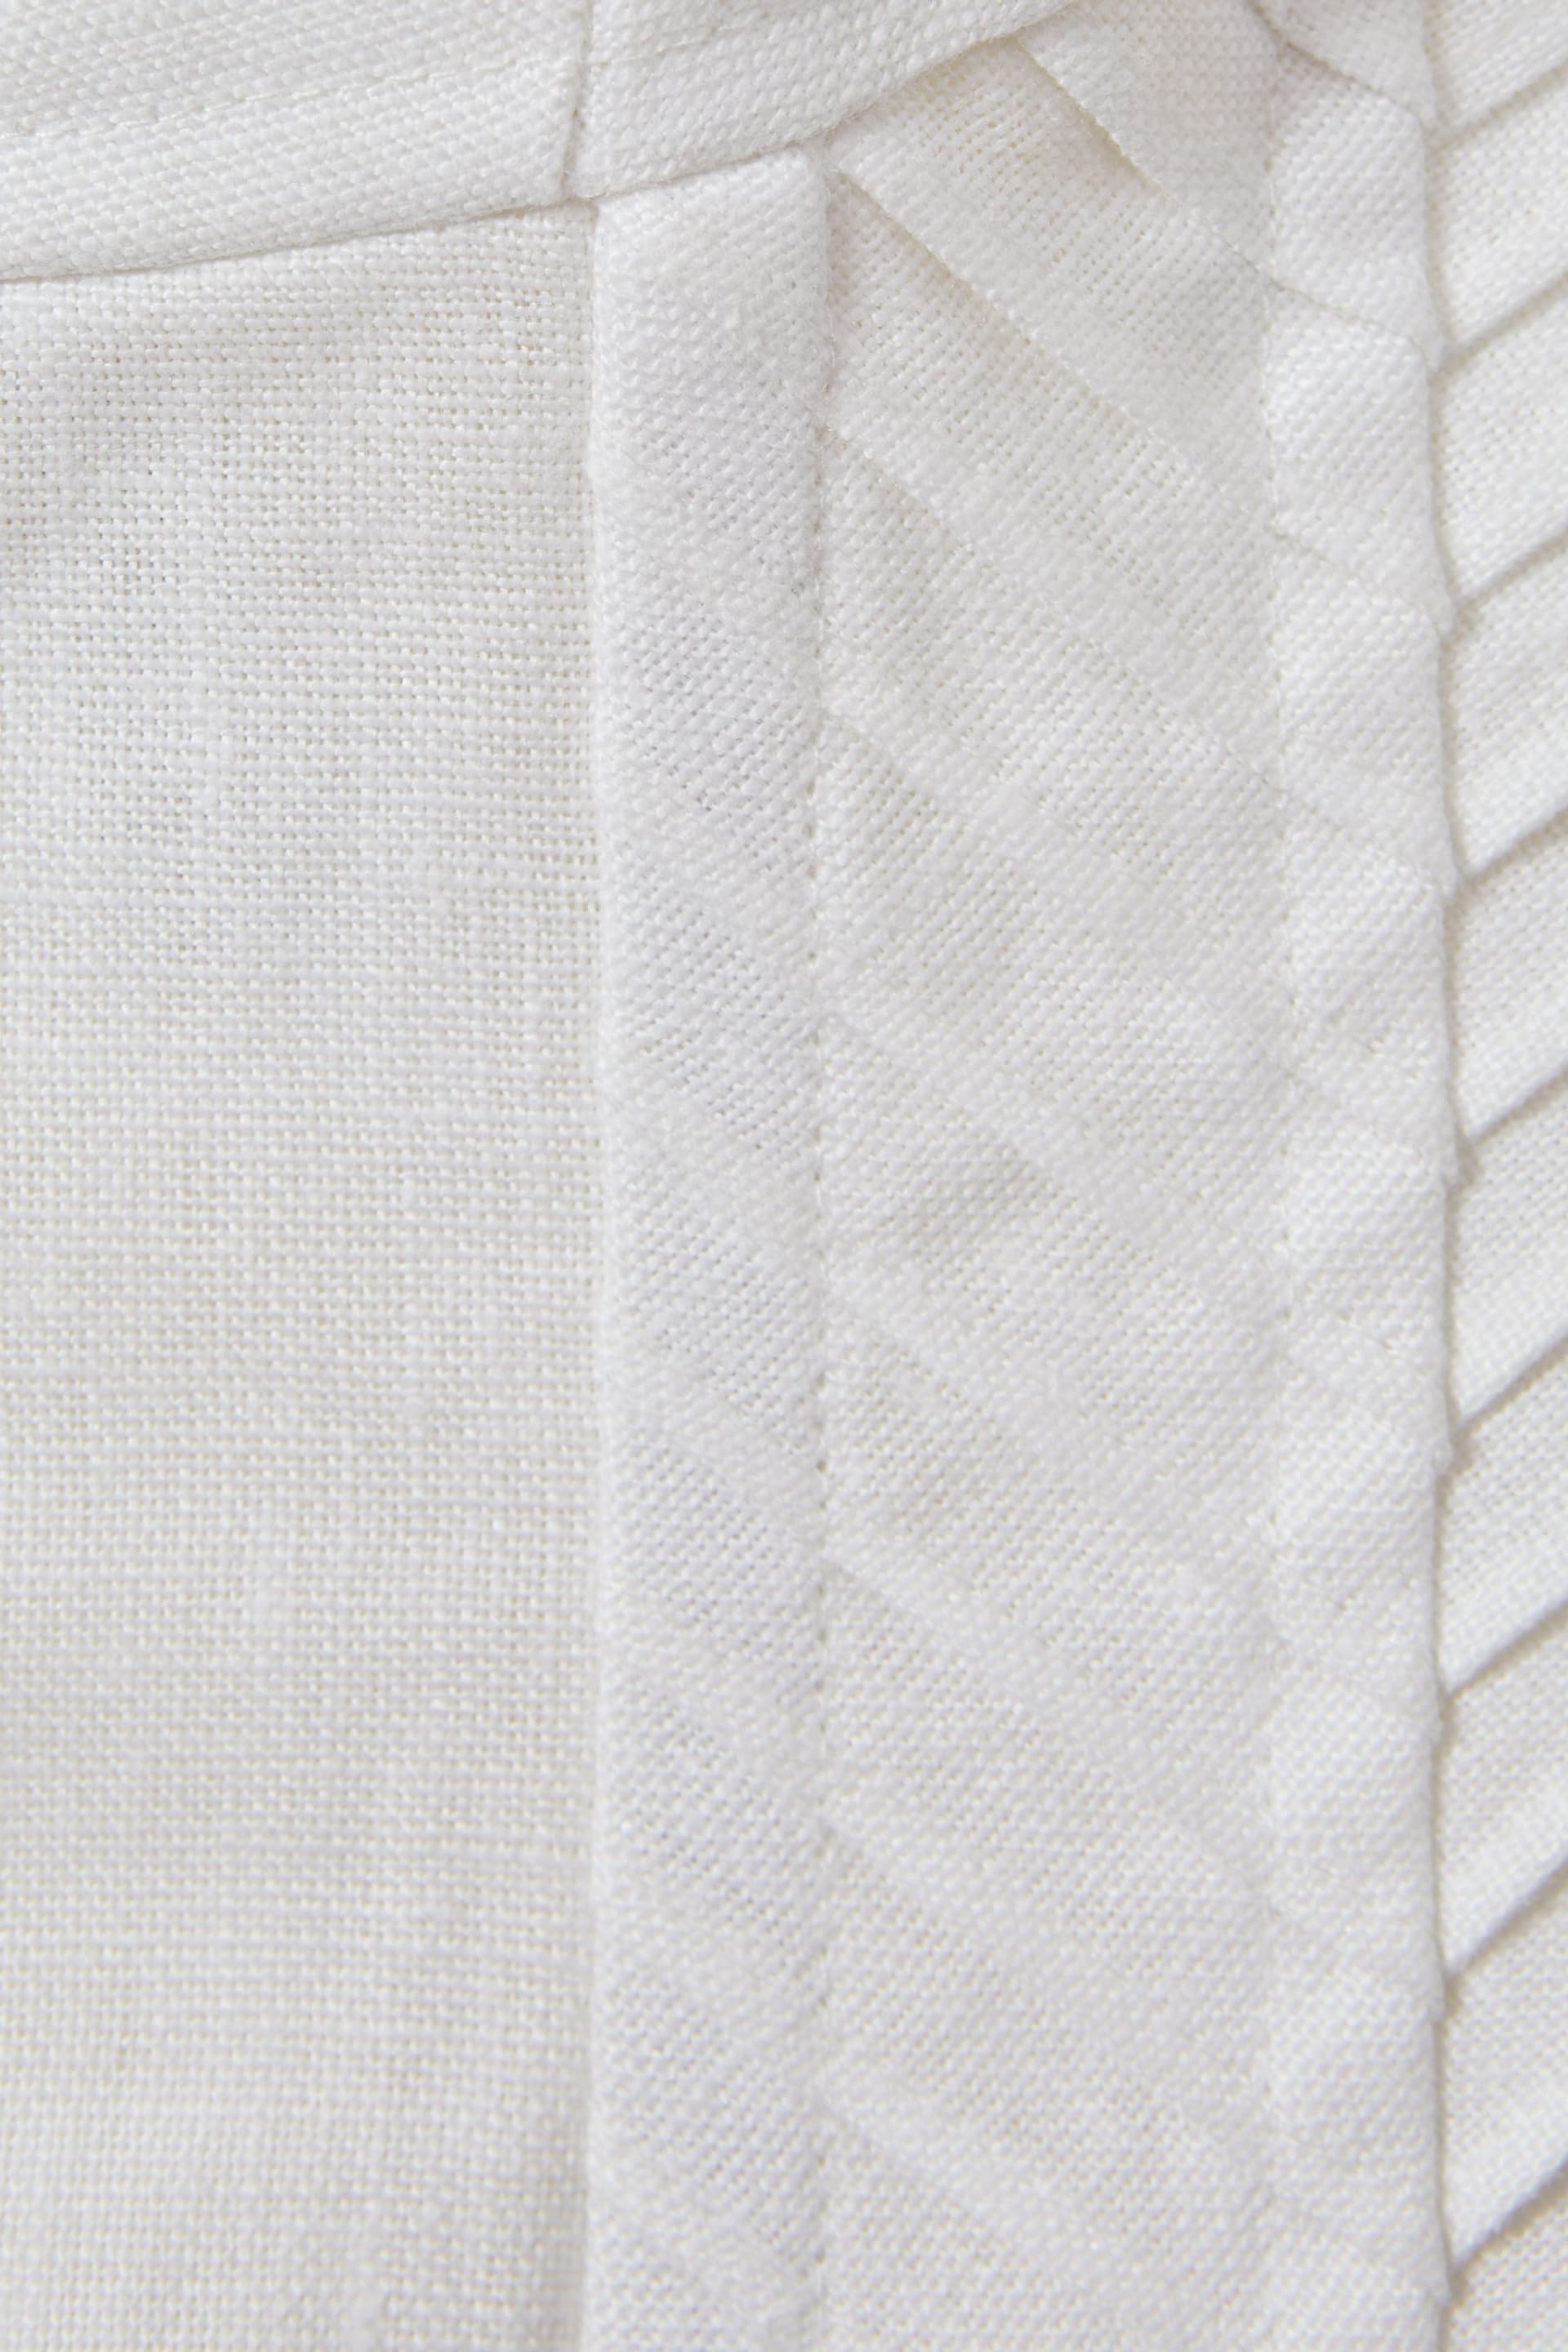 Reiss Cream Mirabelle Linen Corset Vest - Image 4 of 4